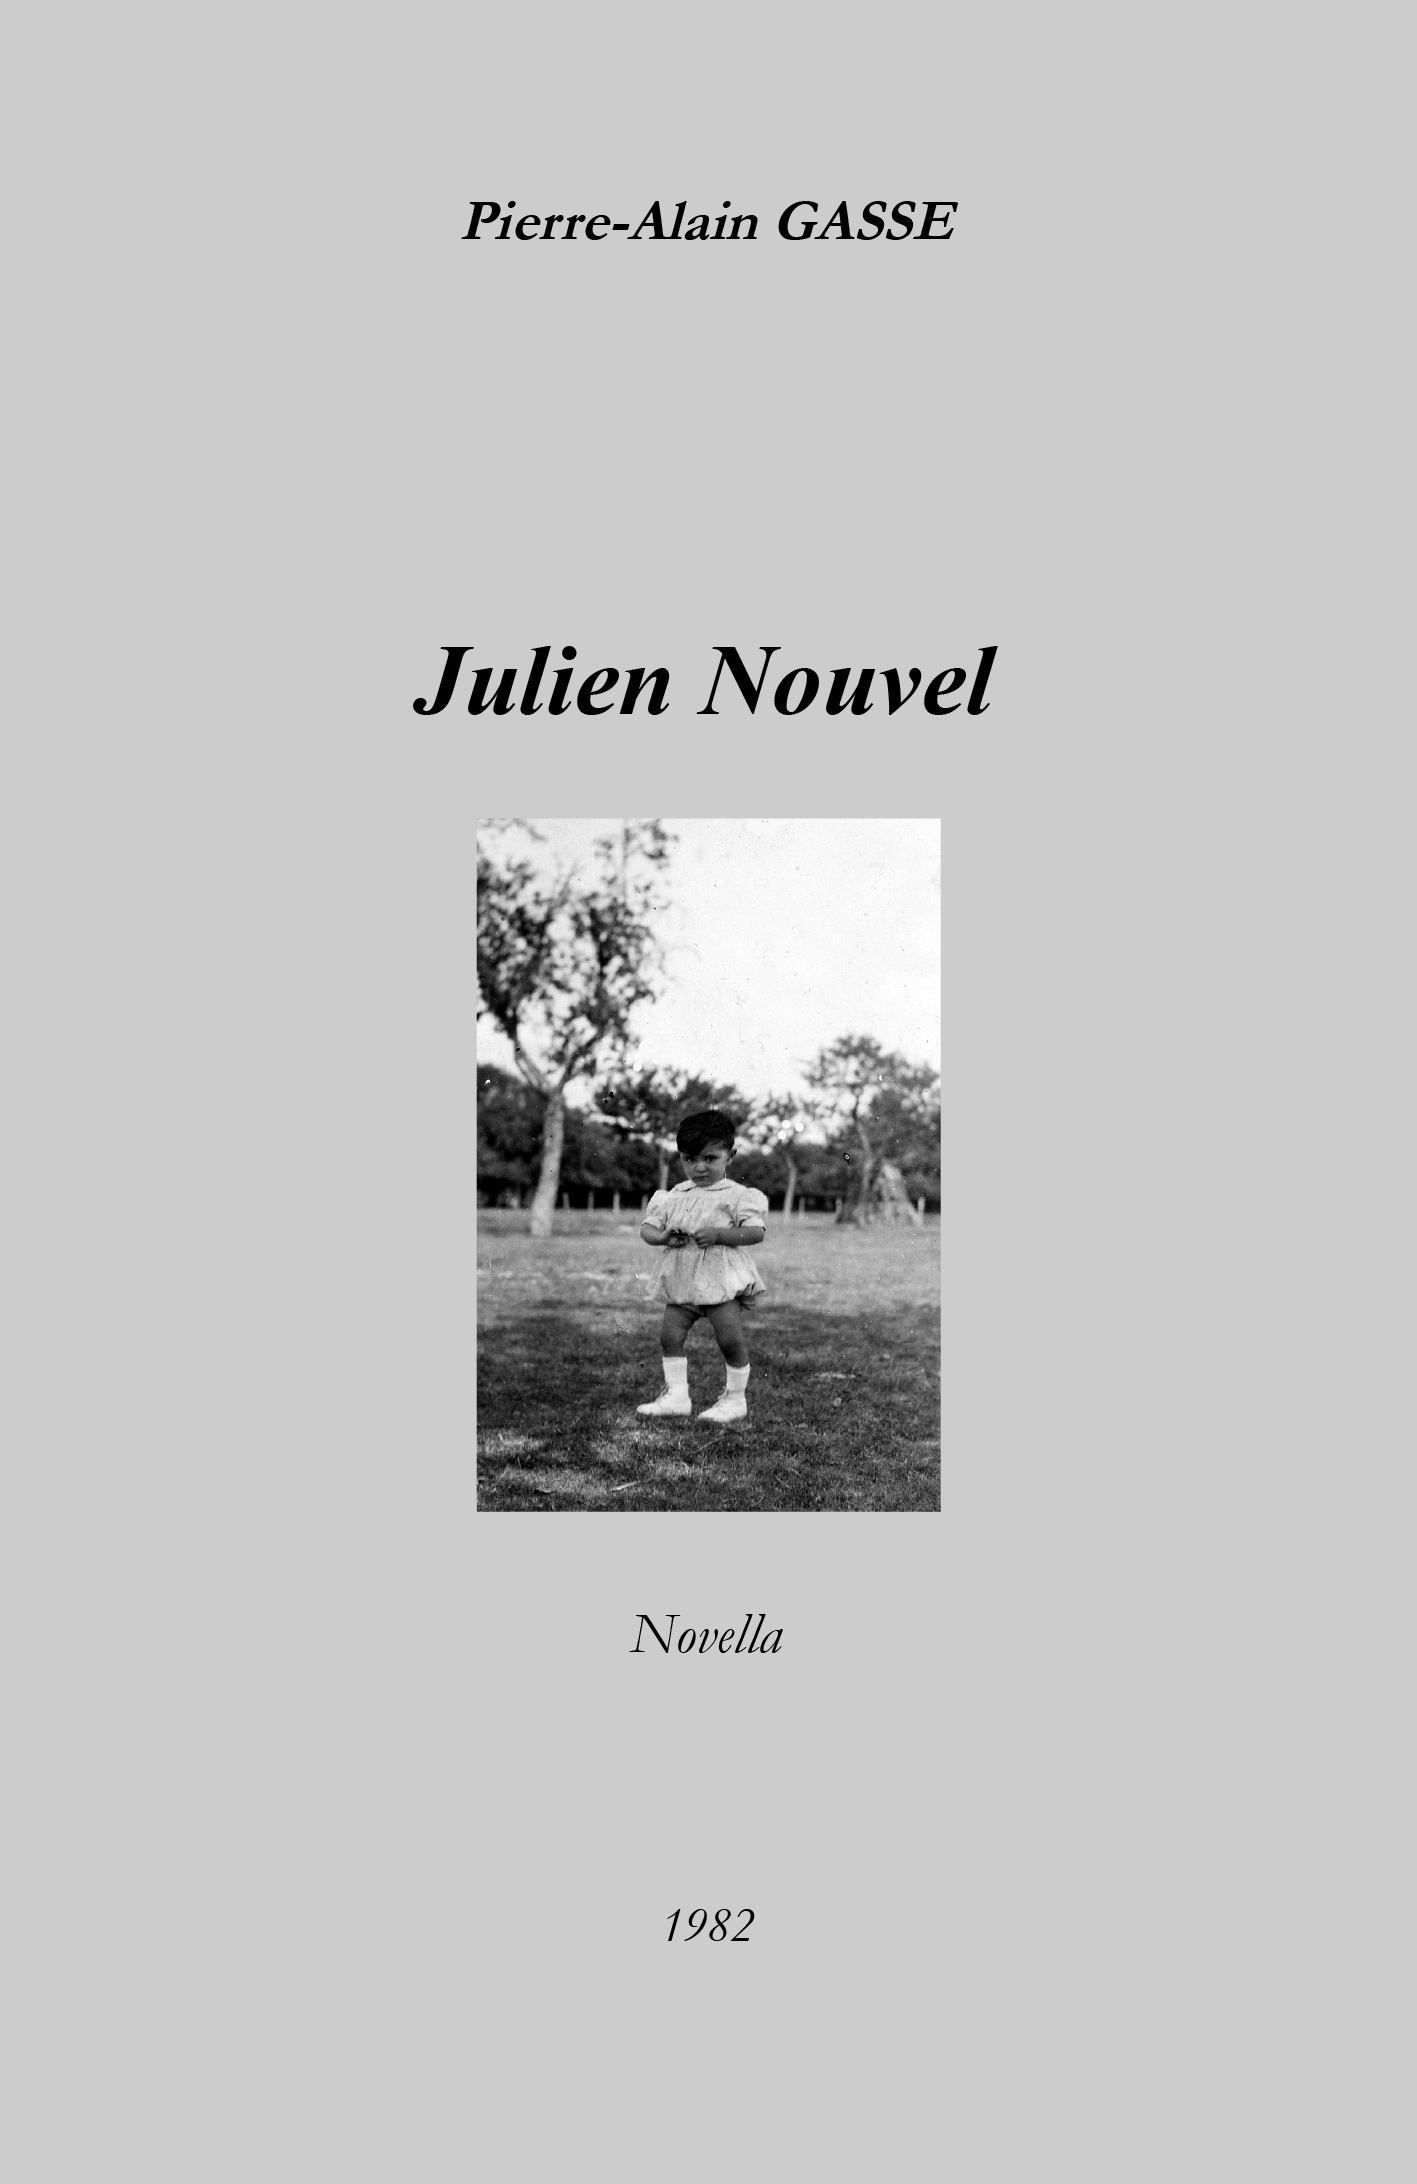 Julien Nouvel